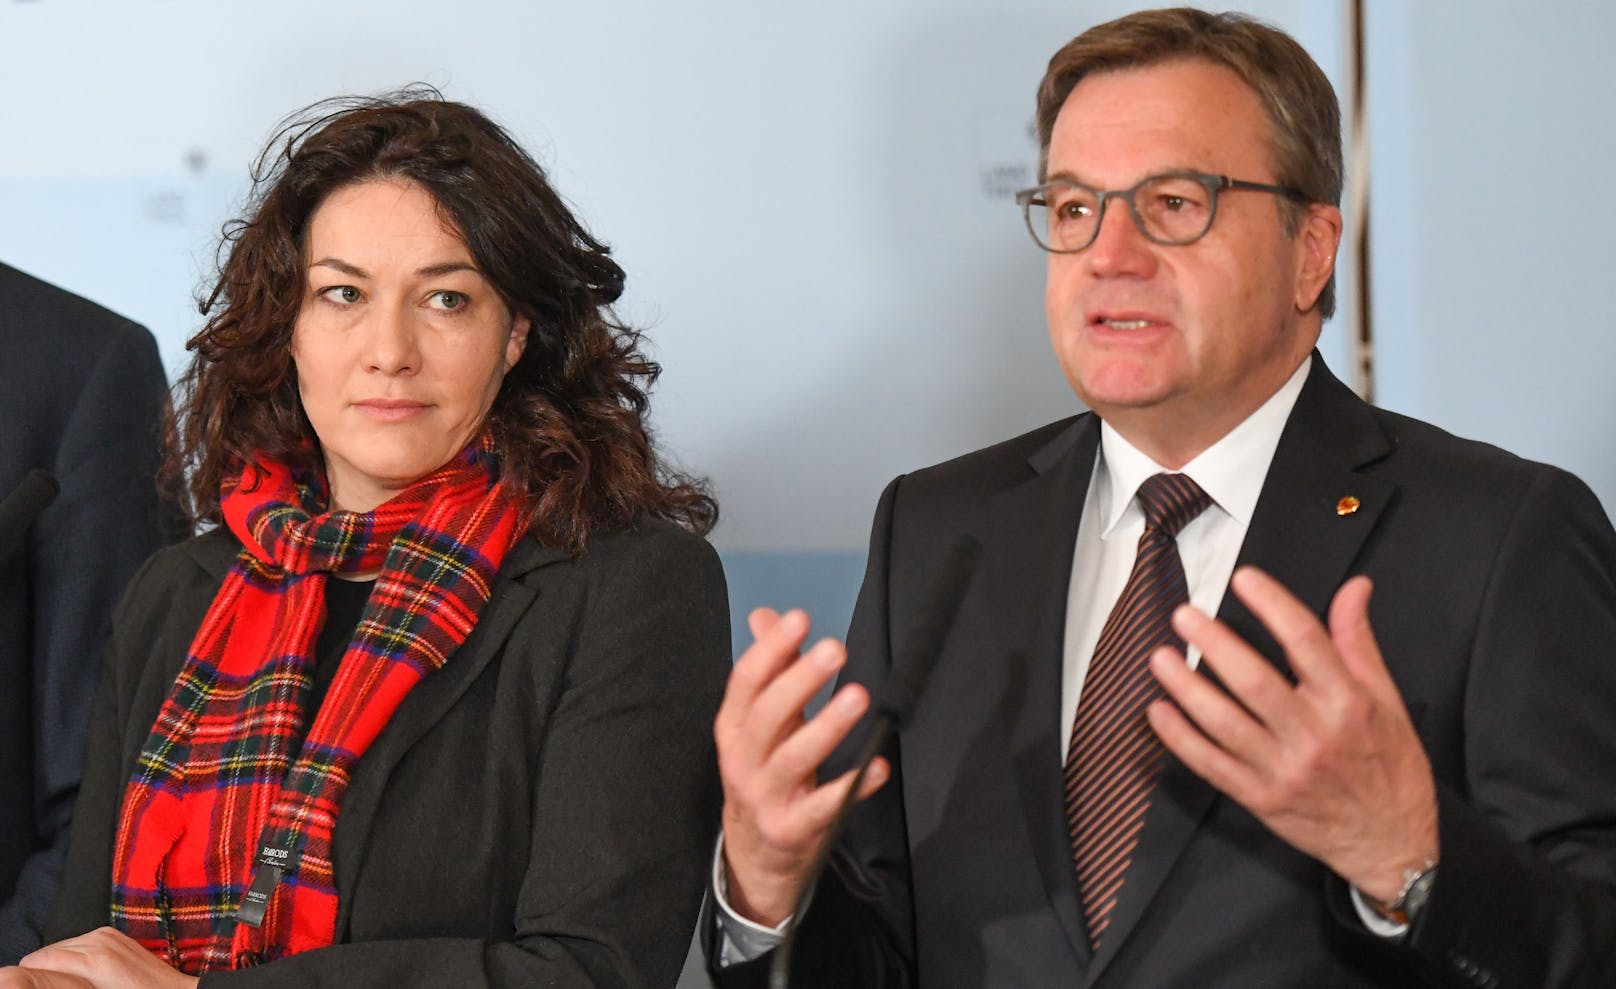 Landeshauptmann Günther Platter (ÖVP) und seine Stellvertreterin Ingrid Felipe (Grüne).